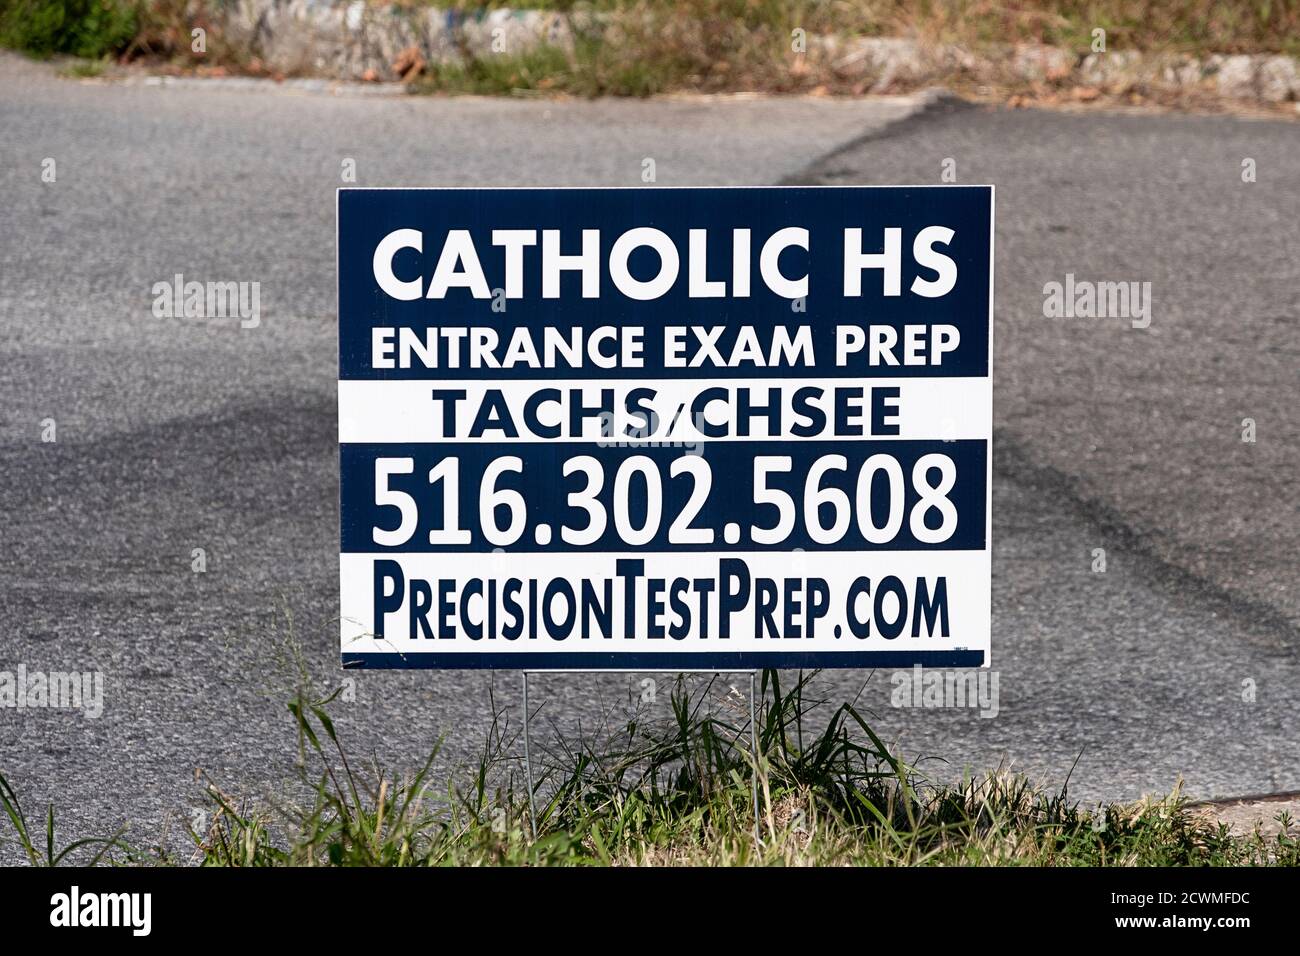 Ein Schild, das einen Dienst anbietet, der die Schüler auf Aufnahmeprüfungen an katholischen Gymnasien vorbereitet. In Whitestone, Queens, New York. Stockfoto